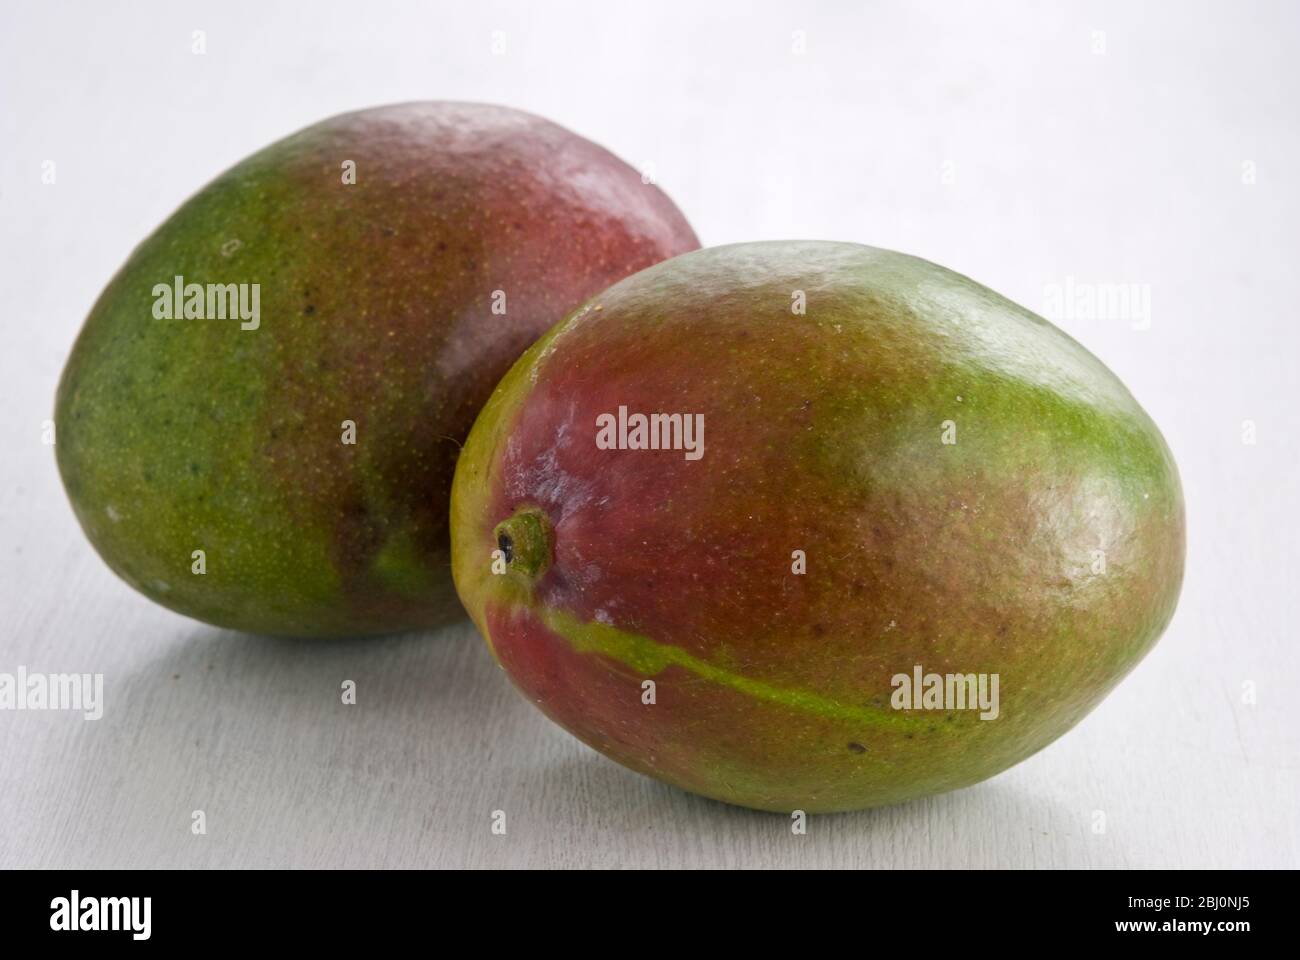 Zwei ganze Mangos auf weißer Oberfläche - Stockfoto